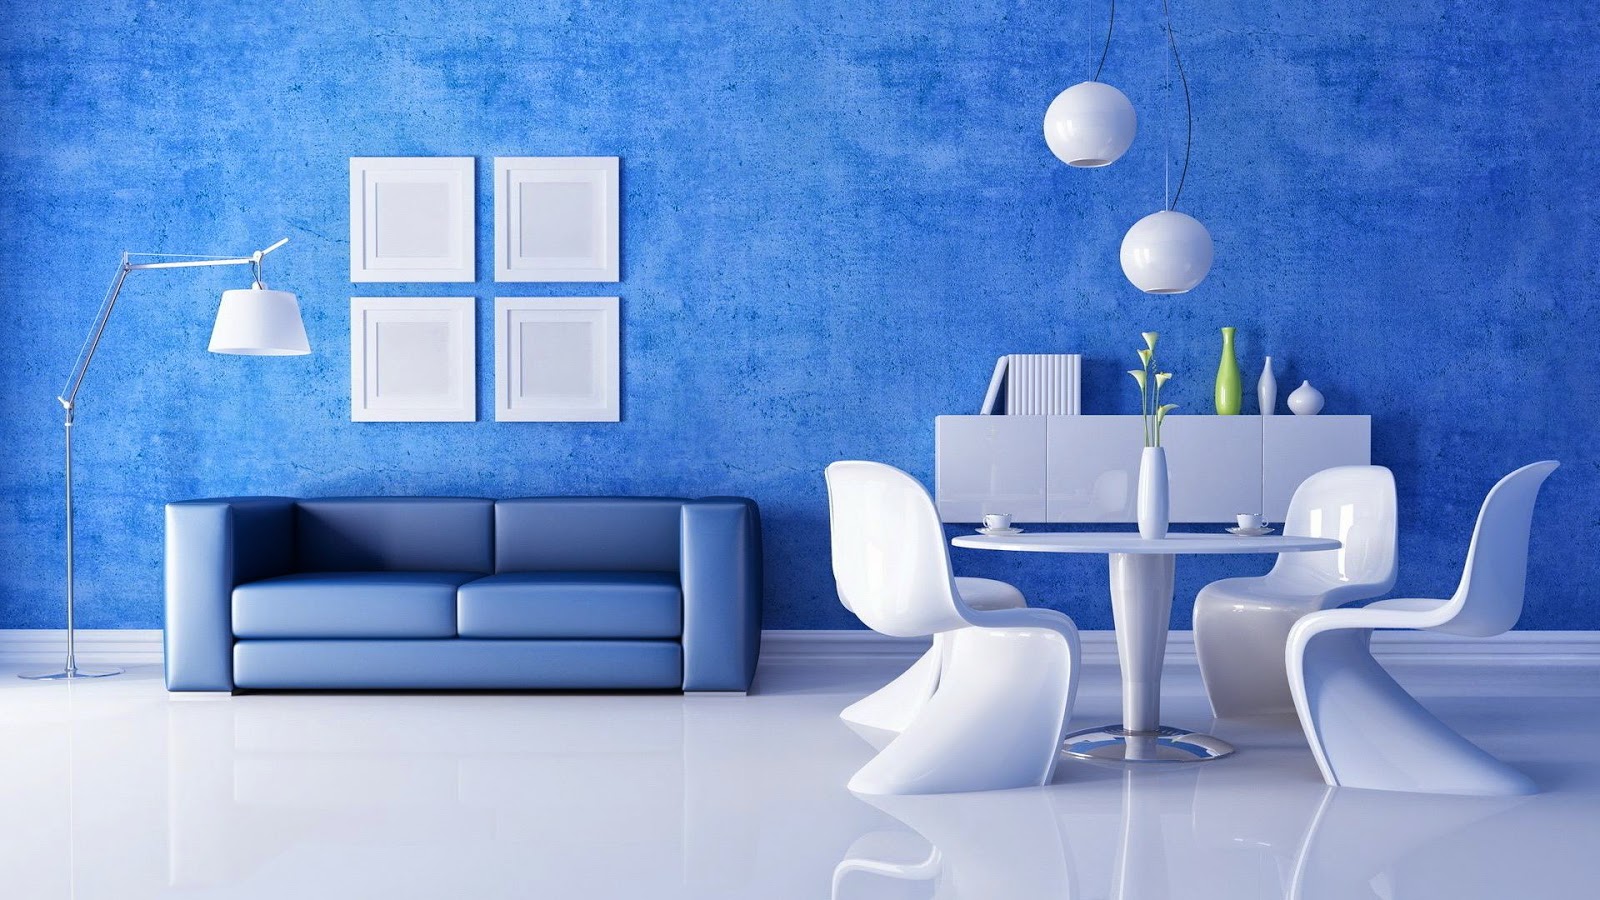 壁紙dinding kamar tidur romantis,青い,リビングルーム,ルーム,製品,インテリア・デザイン